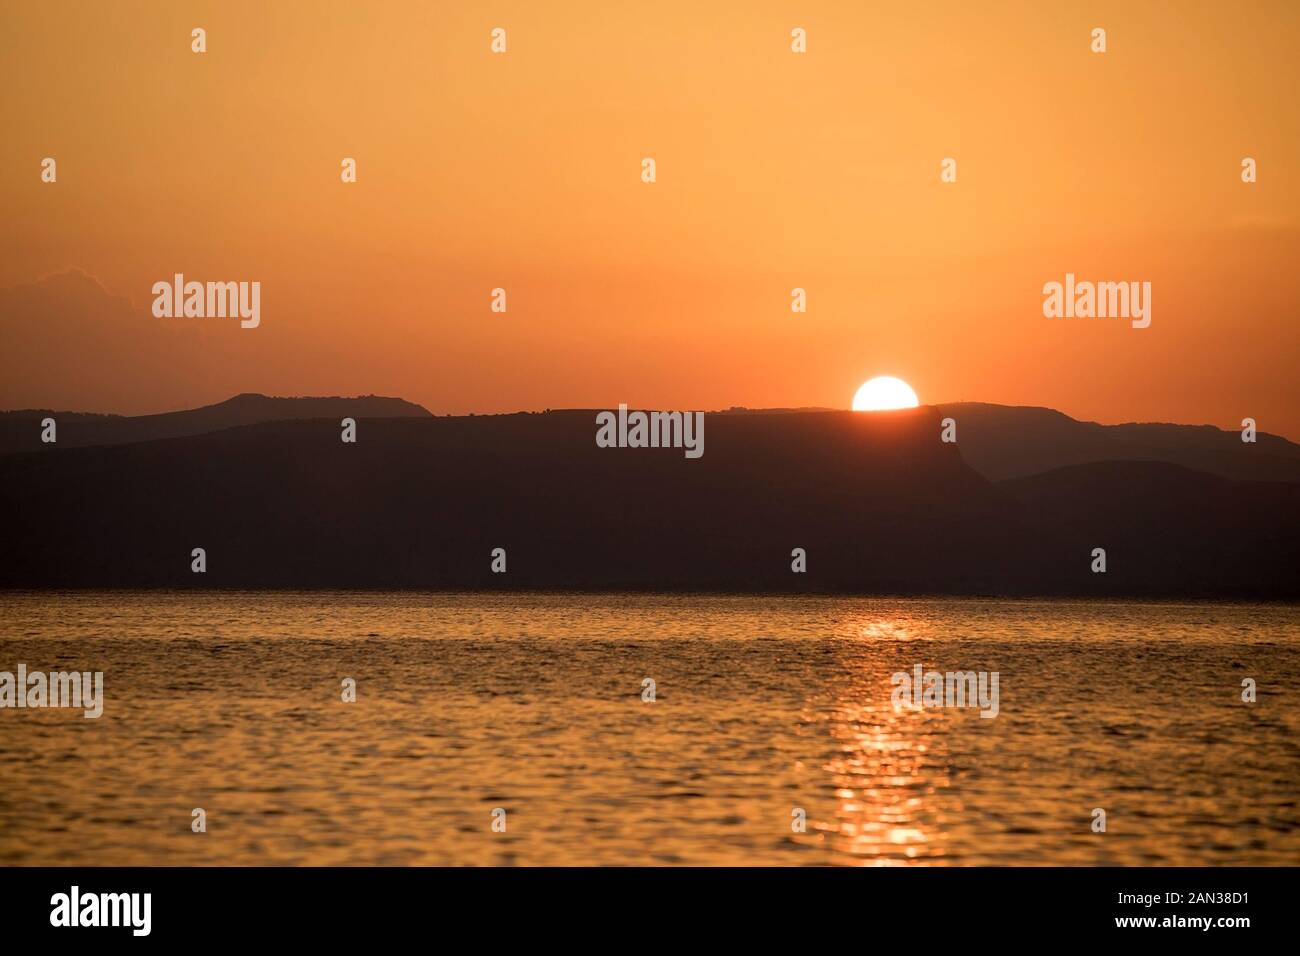 Il sole sorge sul Mare di Galilea, il più grande lago d'acqua dolce d'Israele Foto Stock